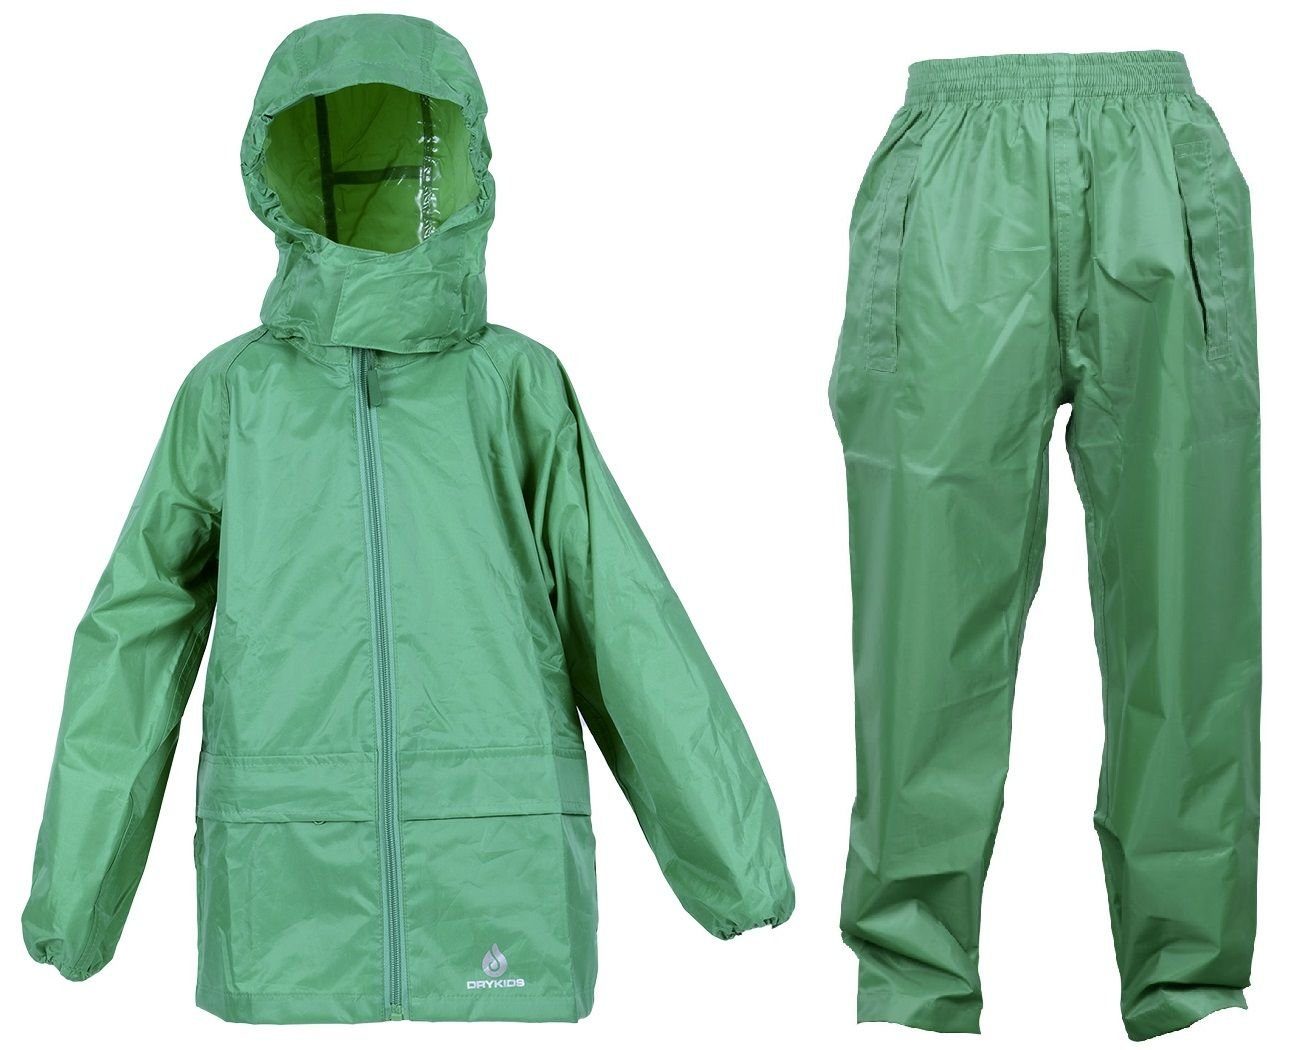 DRY KIDS Regenanzug (1-tlg), Kinder Grün Regenbekleidung reflektierende Regenanzug-Set, Wasserdichtes